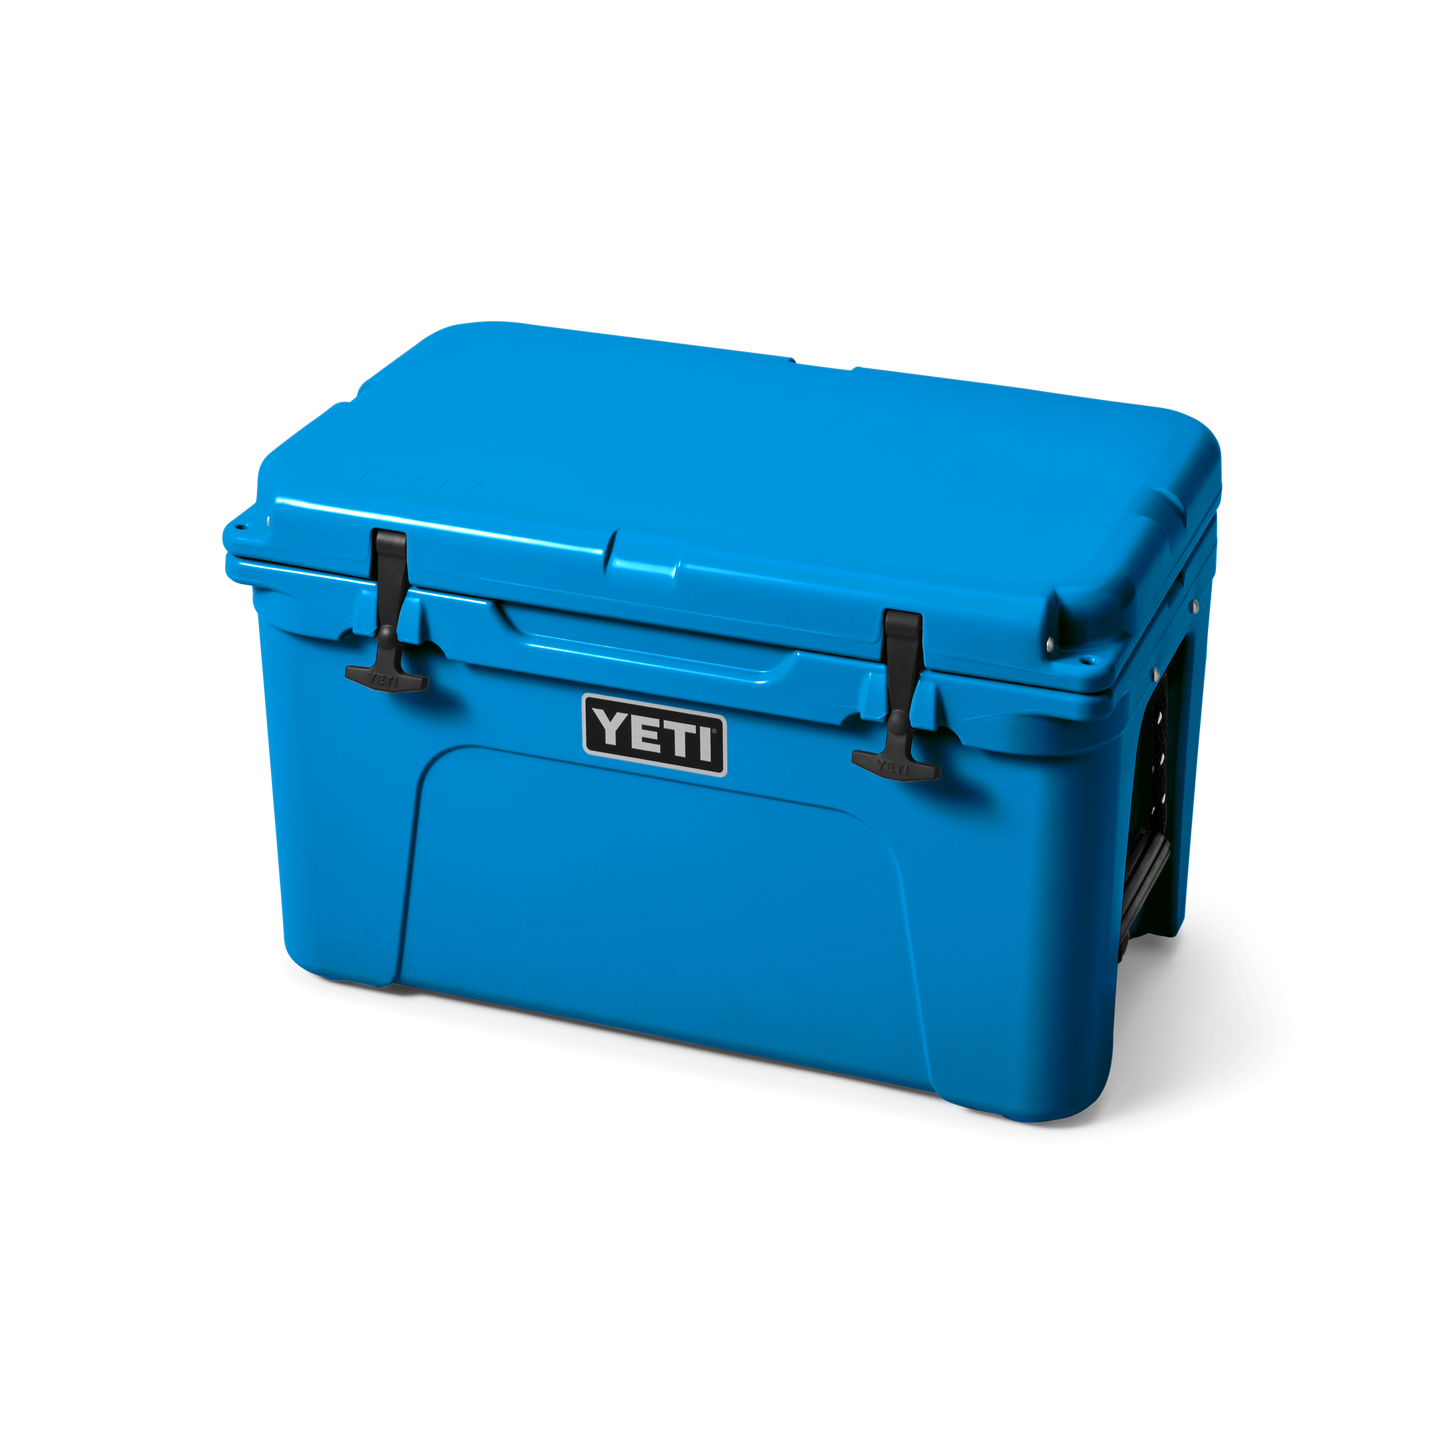 YETI Tundra® 45 Cool Box Big Wave Blue